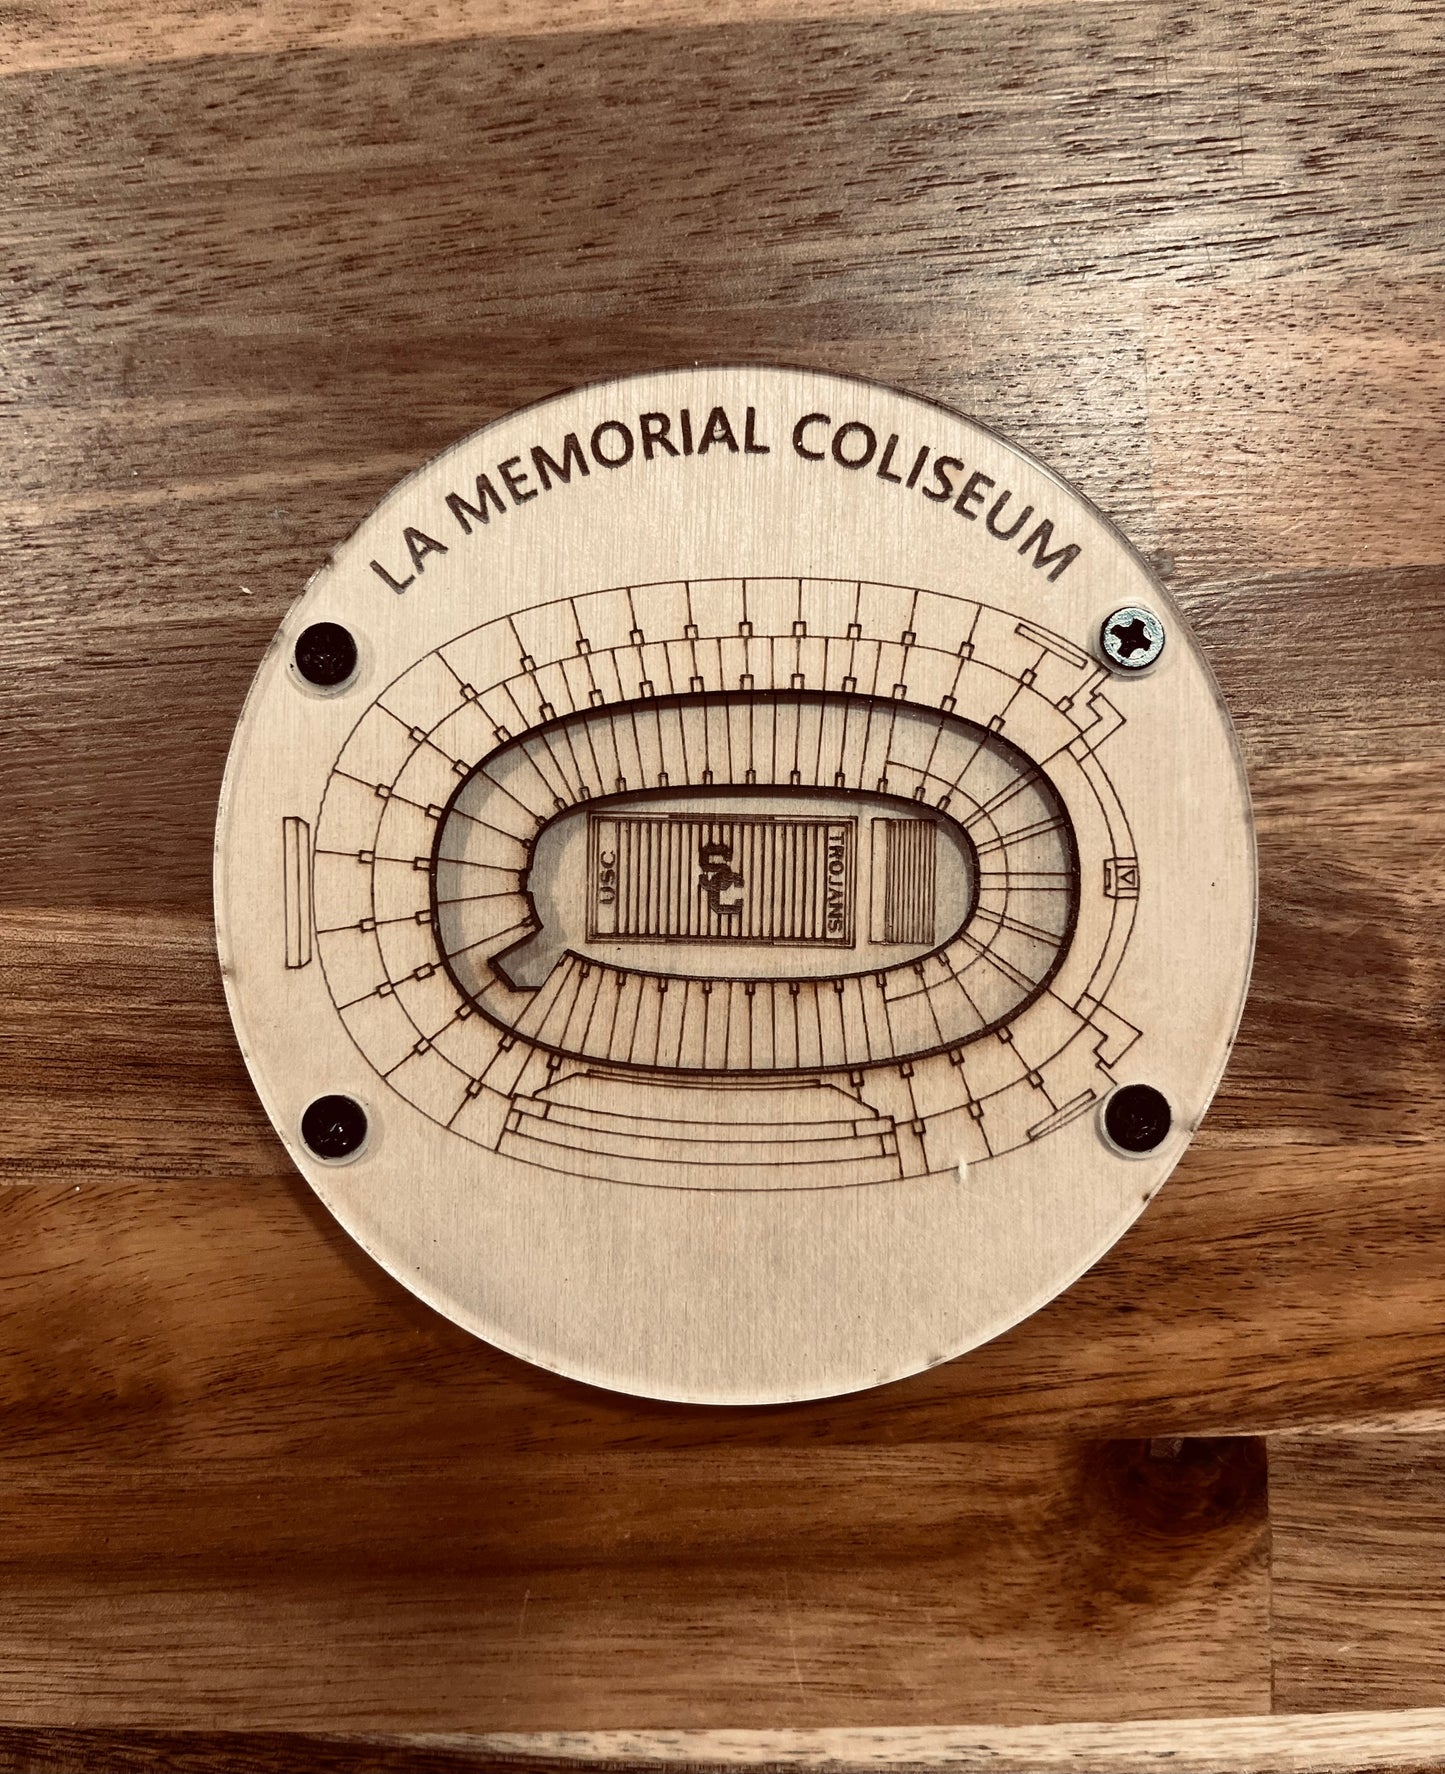 College Football Stadium Coasters